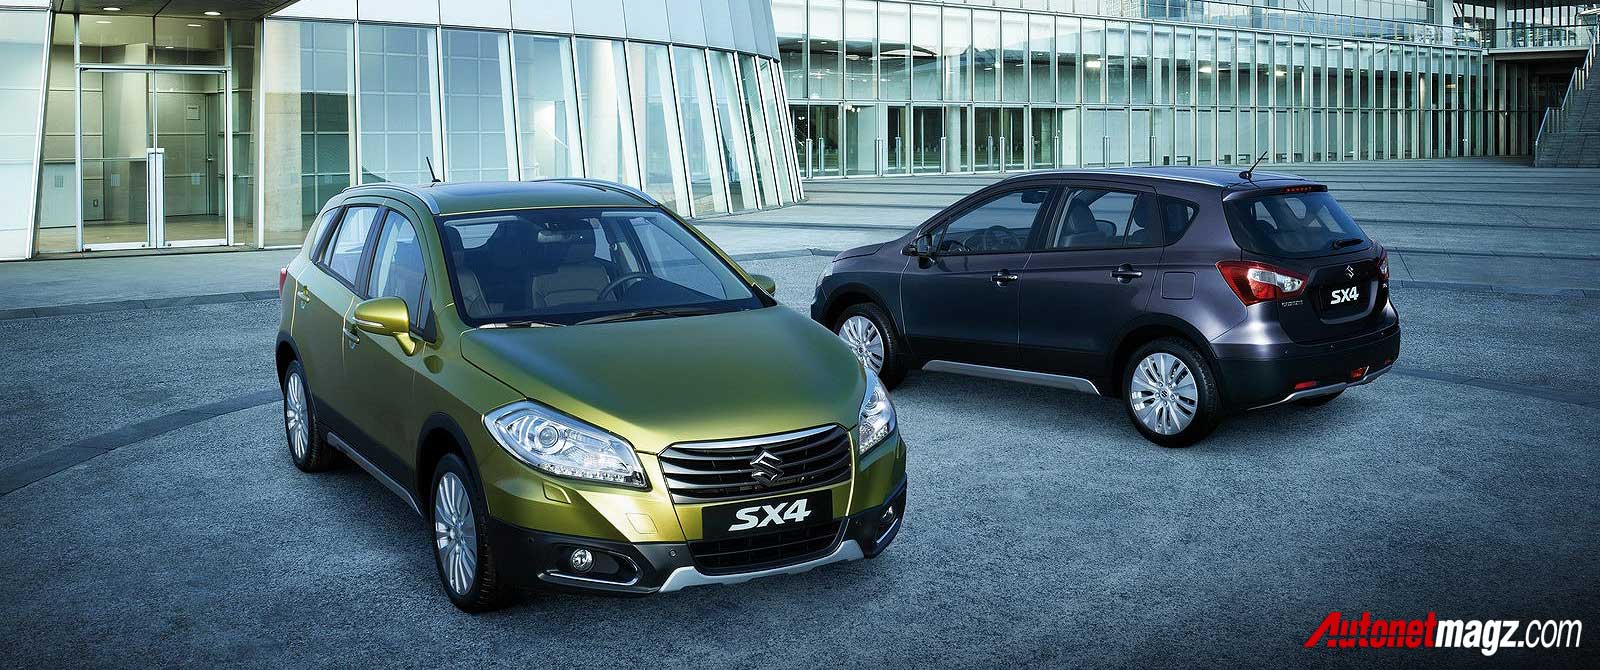 Berita, Suzuki SX4 baru: Suzuki Memperkenalkan SX4 Baru Dengan Body Yang Lebih Besar